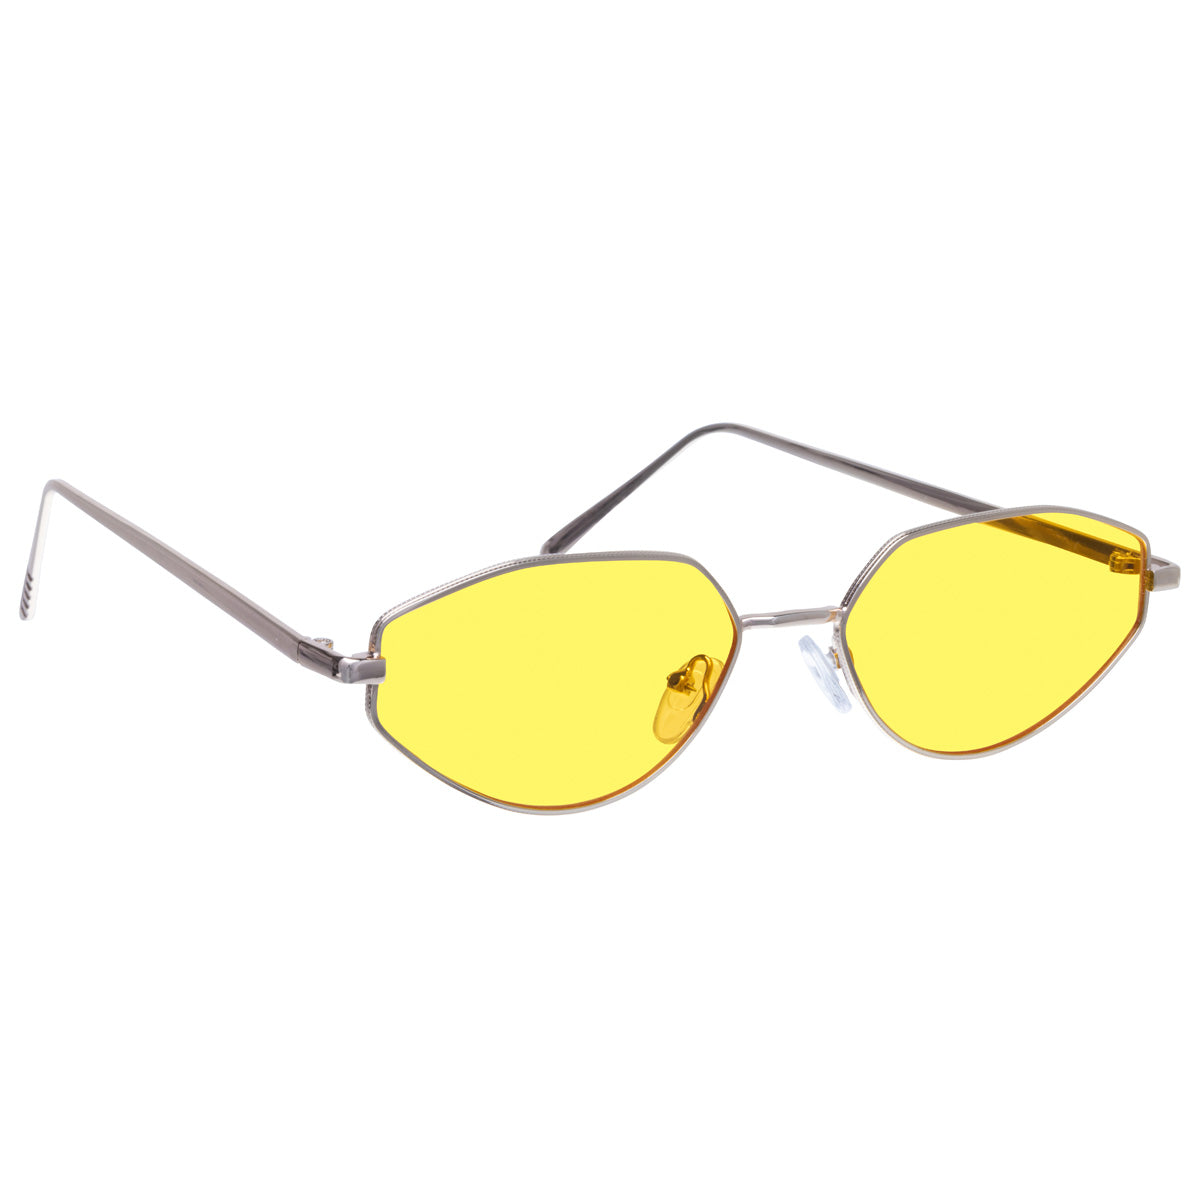 Angular oval sunglasses with metal frame